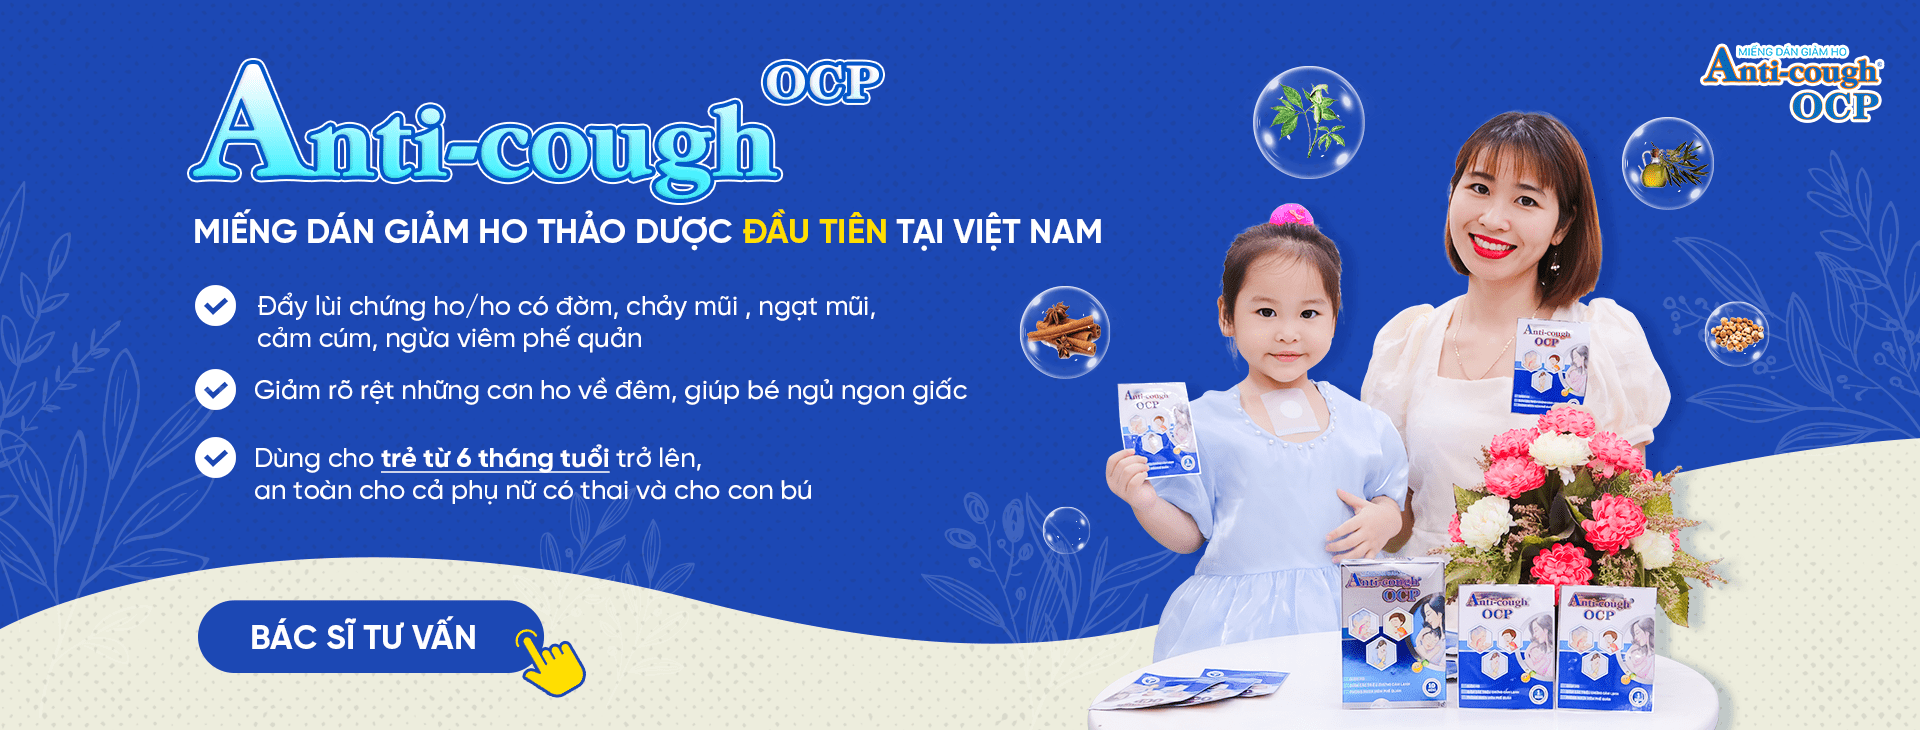 Anh Dương - Chủ nhà thuốc tại số 10 Noong Hẹt, Điện Biên